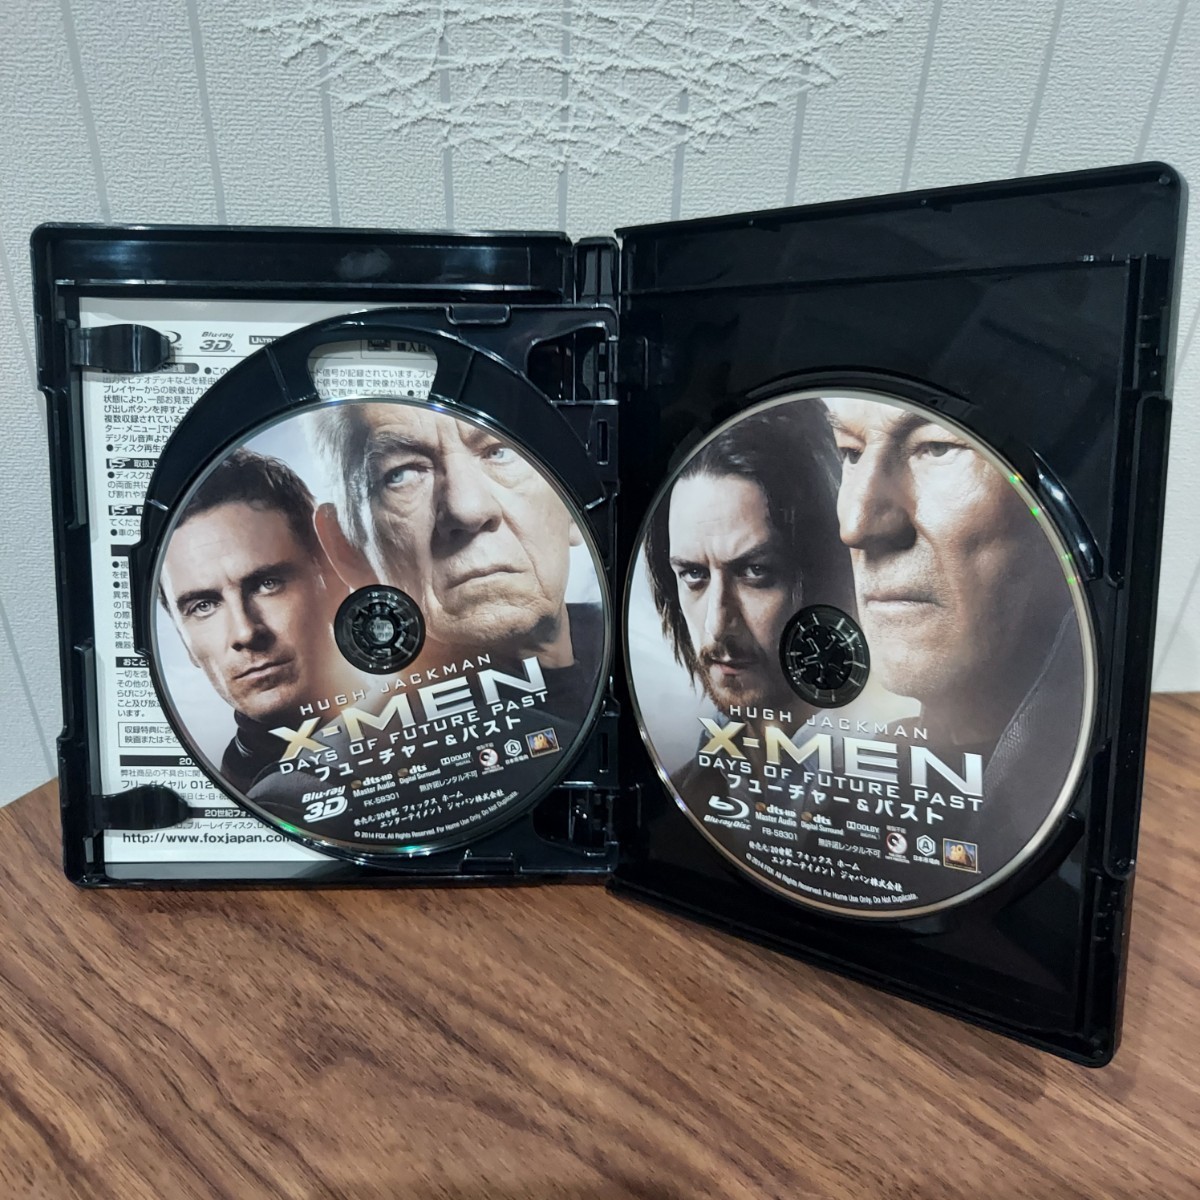 XーMEN フューチャー&パスト 4K+3D+ブルーレイ Blu ray UHD 映画 洋画 ウルヴァリン ヒーロー アクション ヒュー・ジャックマン_画像3